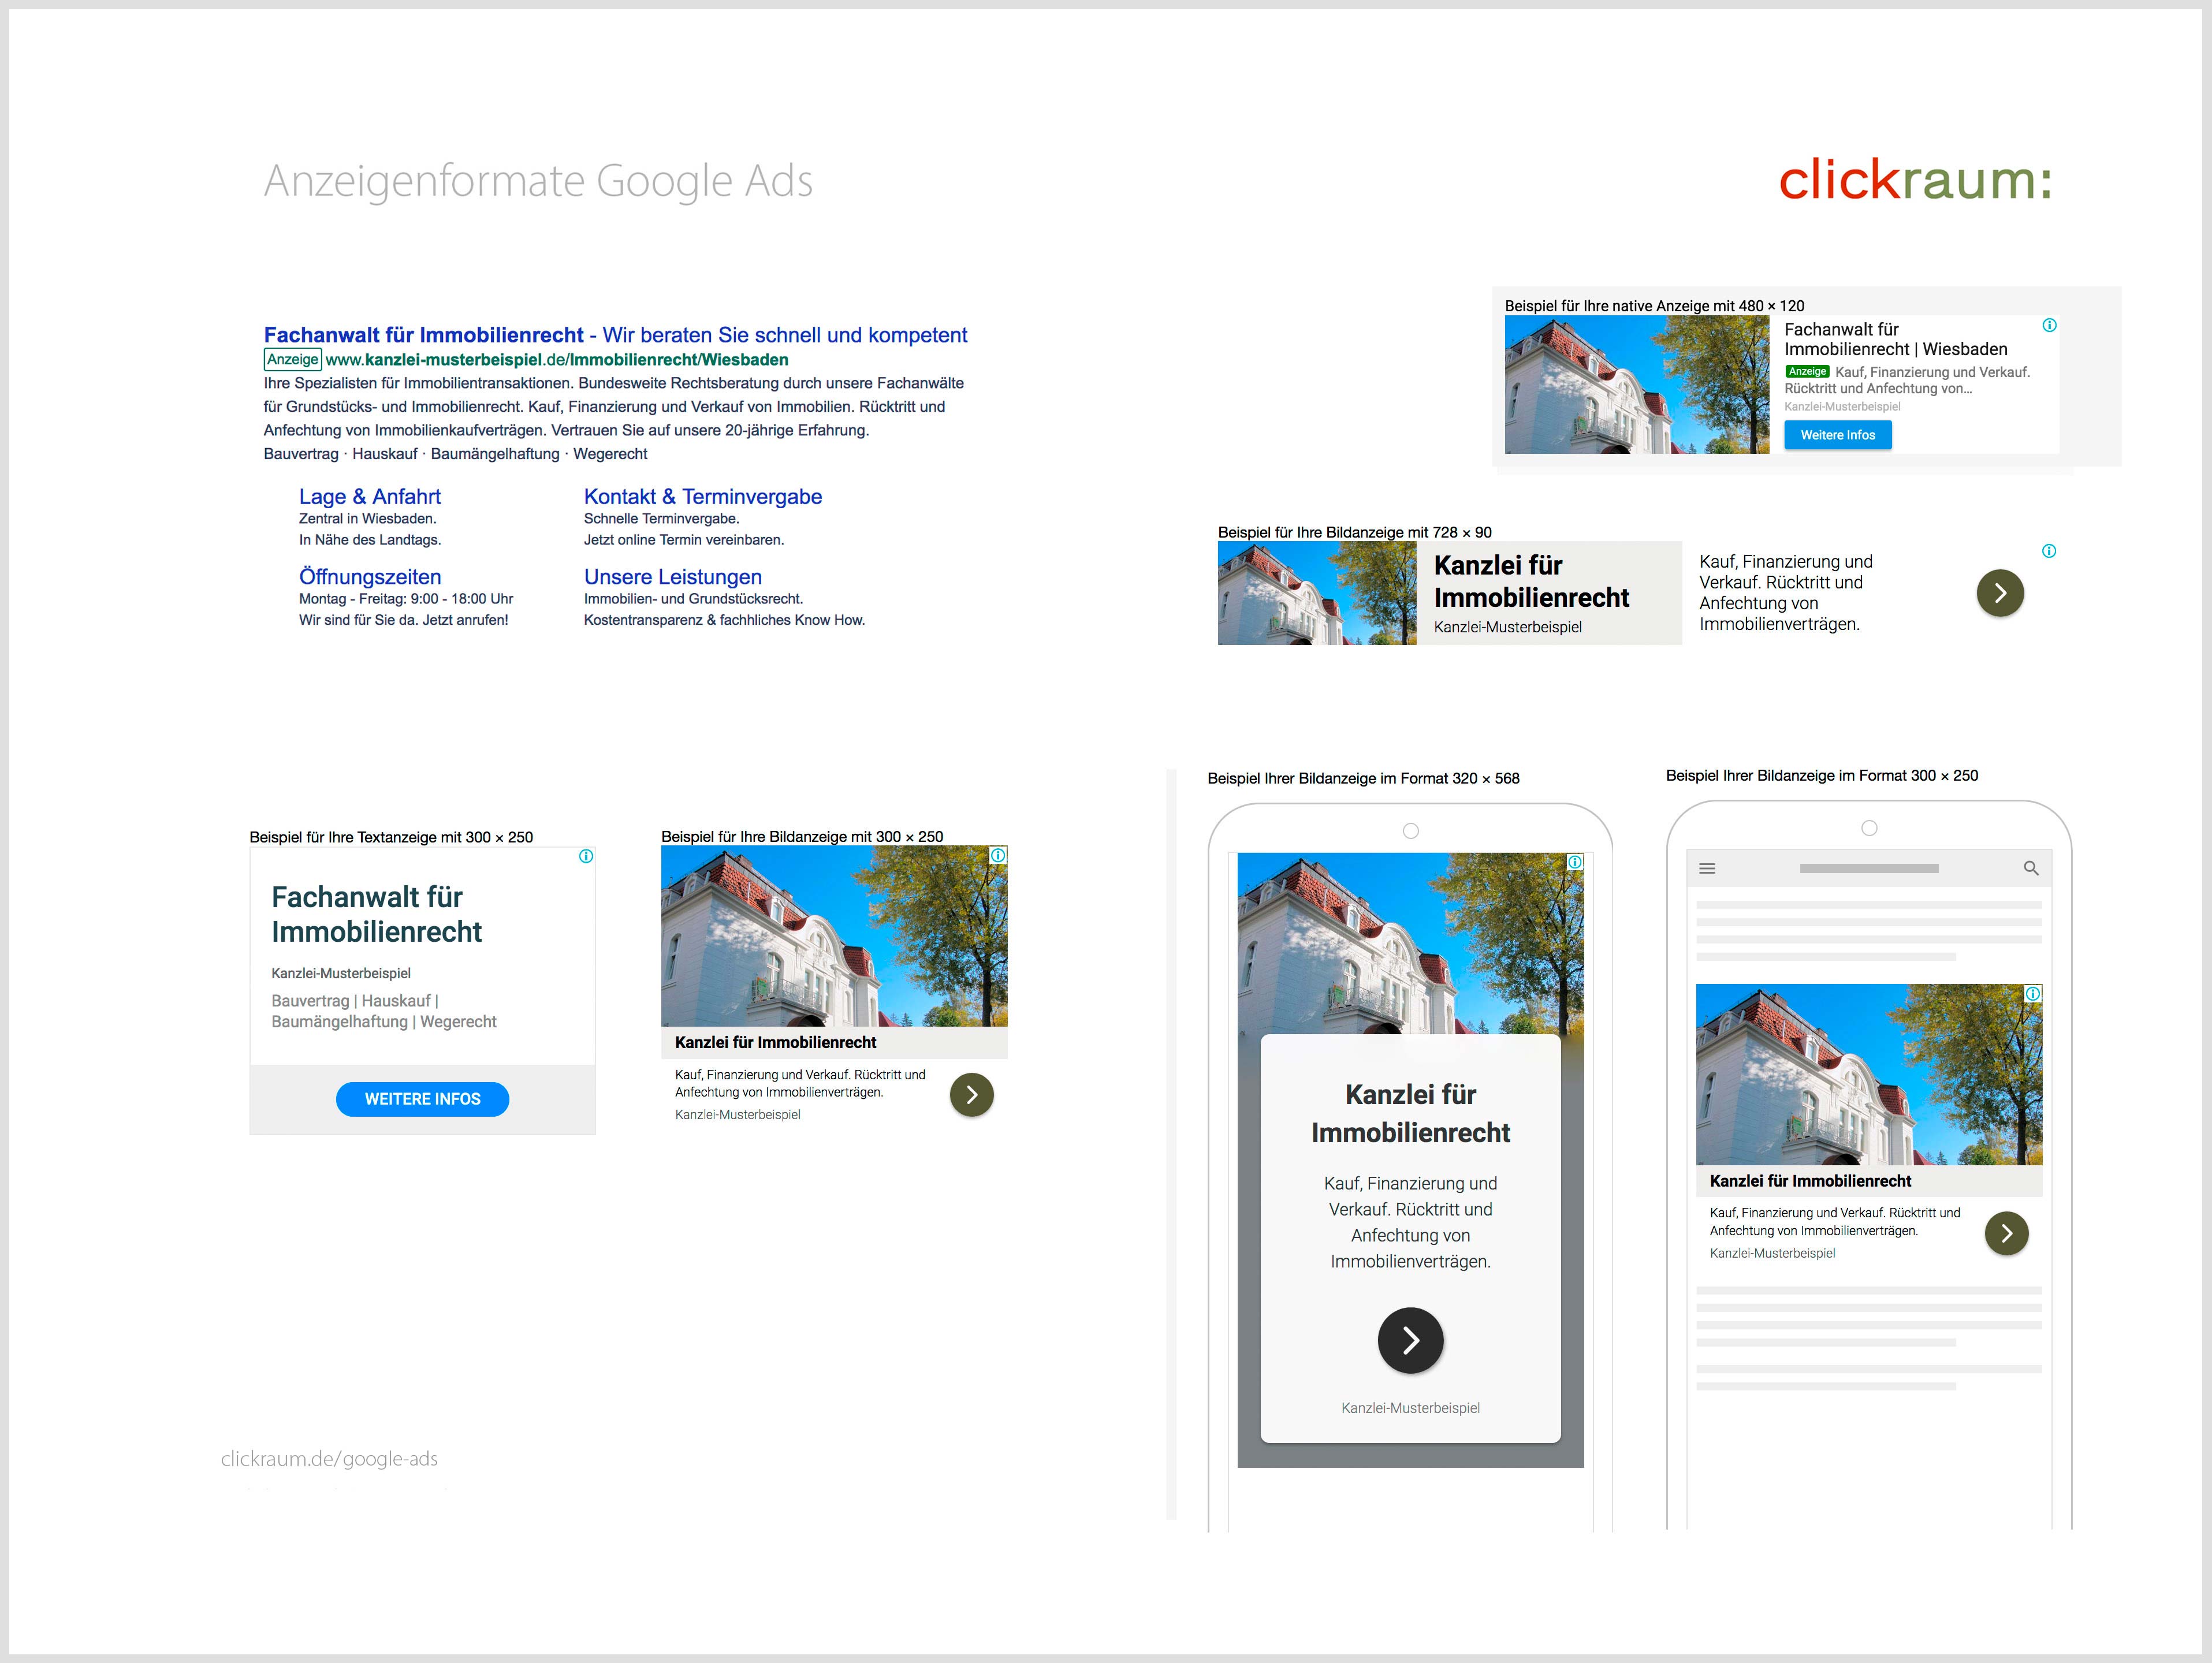 Schaubild - Anzeigen-Varianten mit Google Ads. Textanzeigen und Bild/Textanzeigen